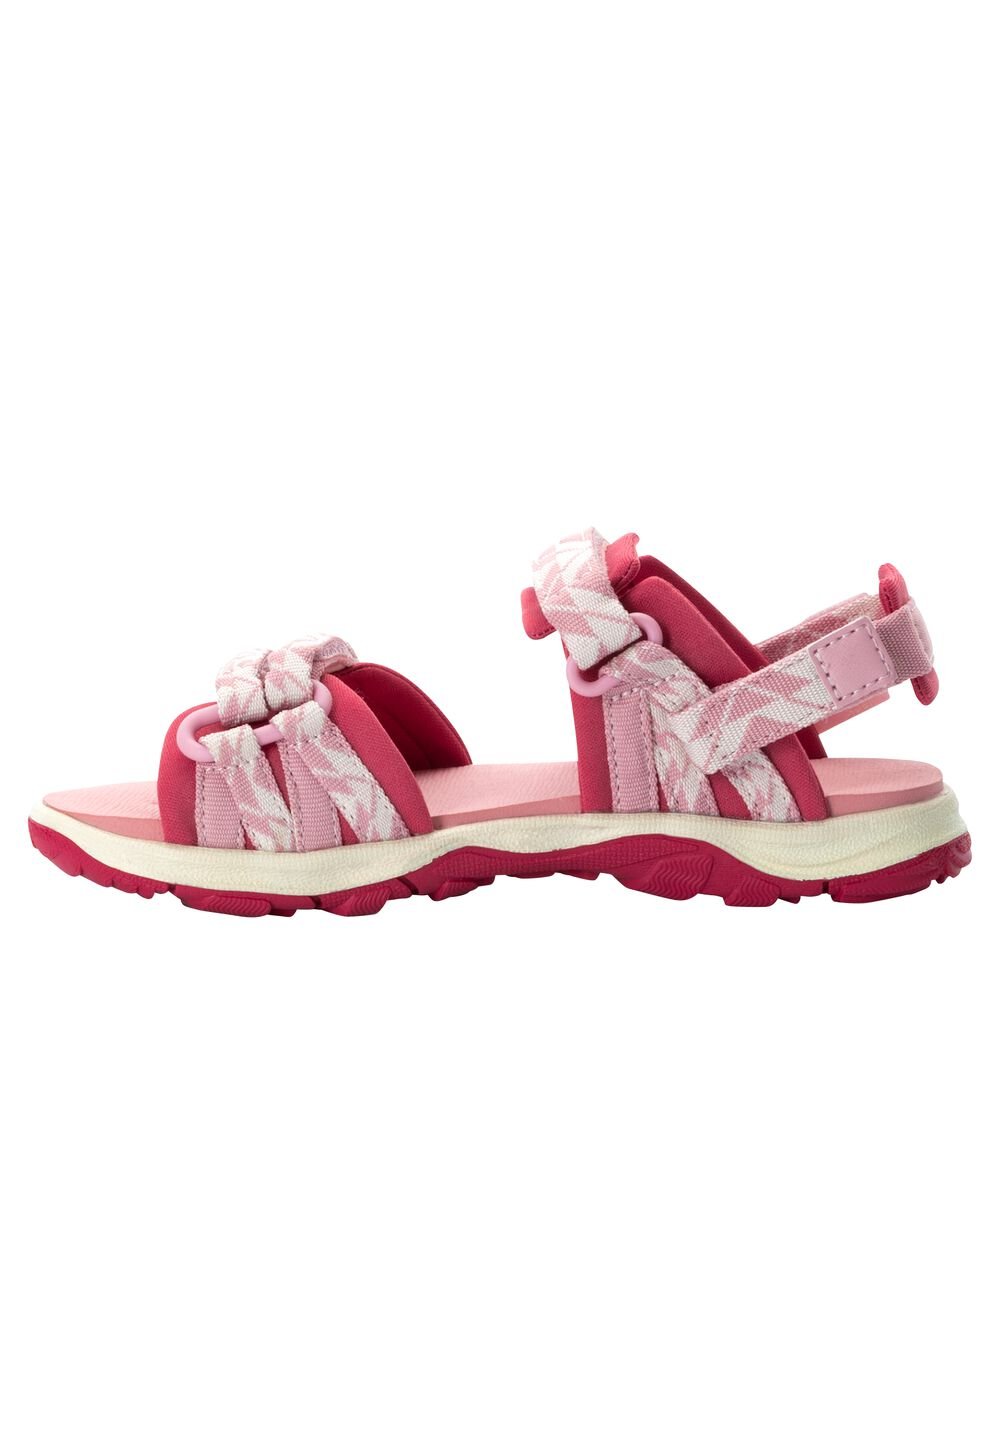 Jack Wolfskin 2 IN 1 Sandal Kids Kinderen sandalen 28 soft pink soft pink